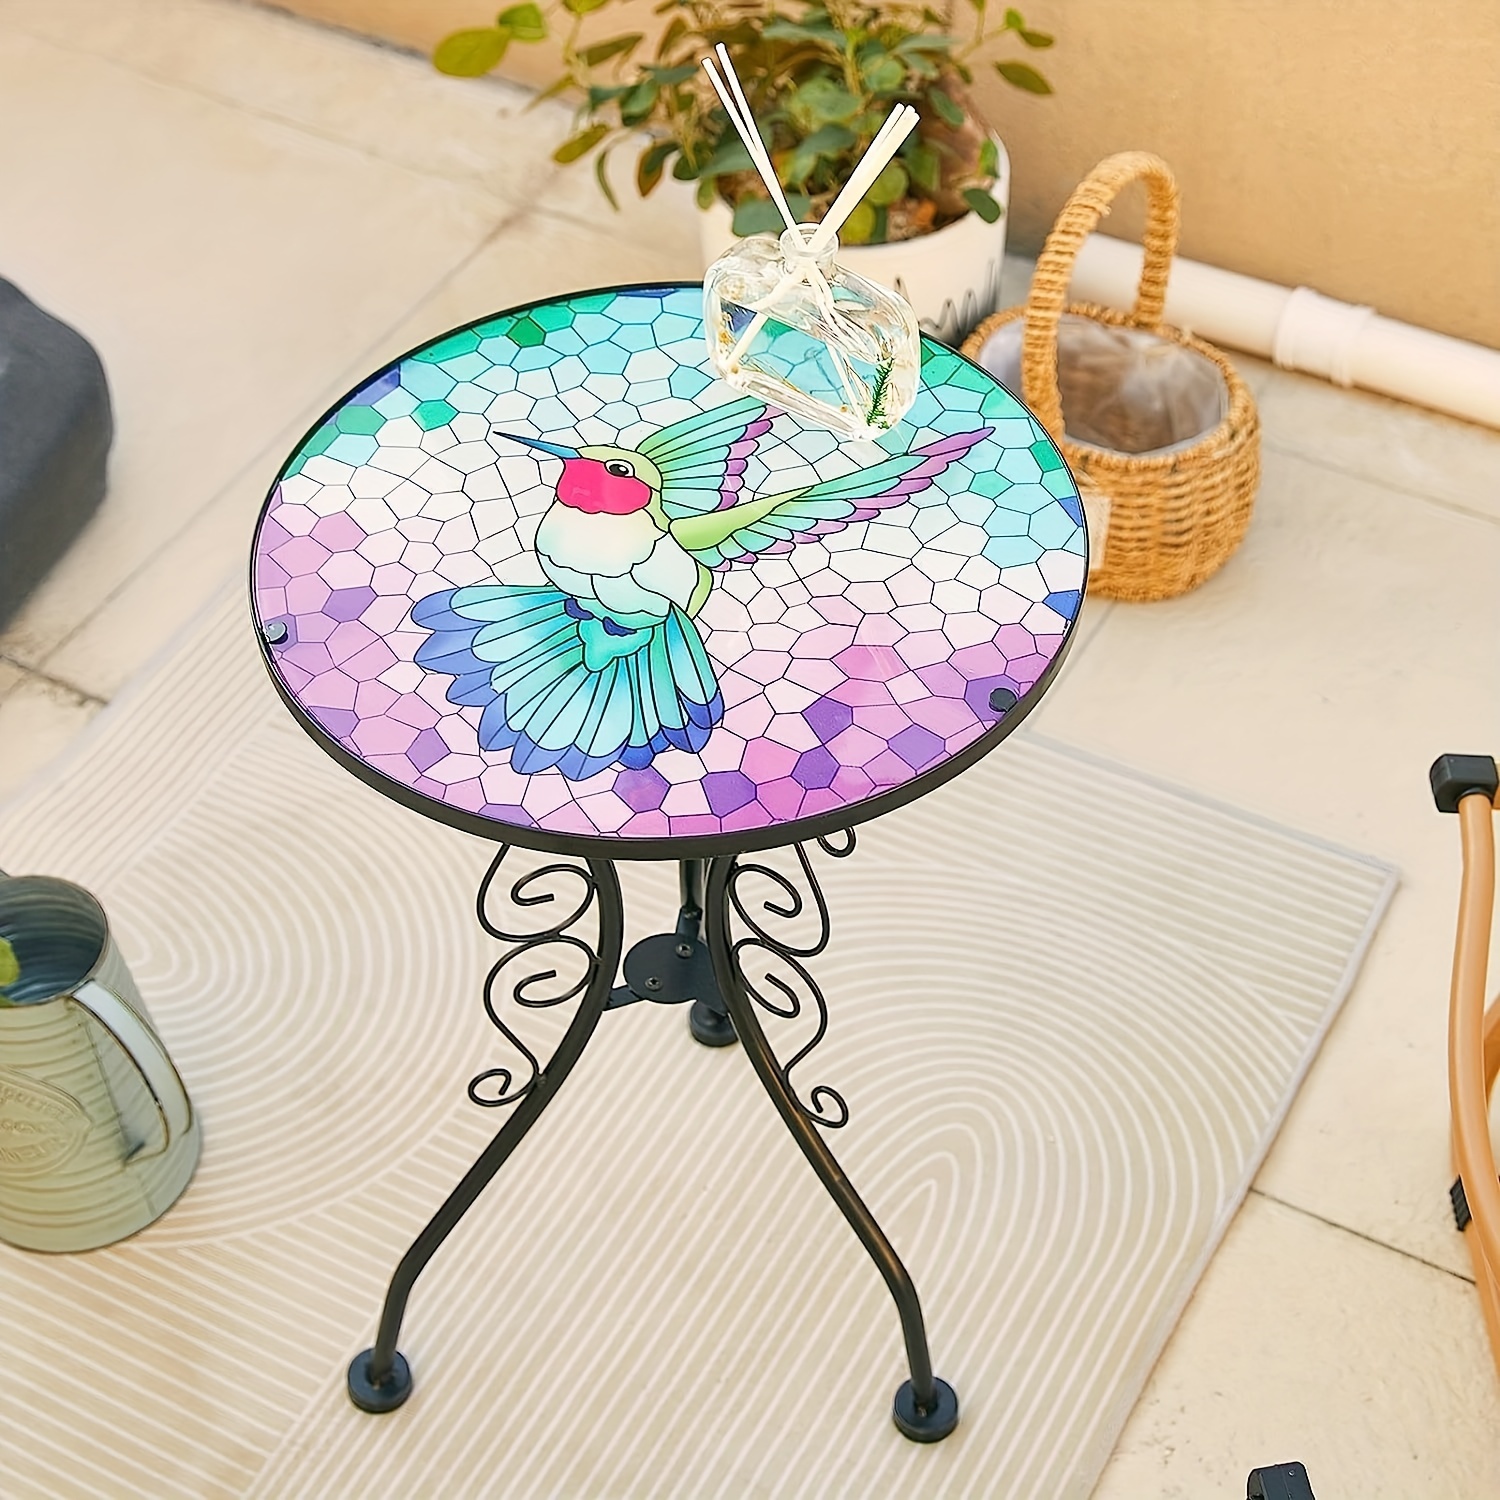 Mesa pequeña de patio (juego de 1) mesa pequeña de madera de acacia, mesa  auxiliar, mesa auxiliar de café, mesa auxiliar plegable redonda pequeña